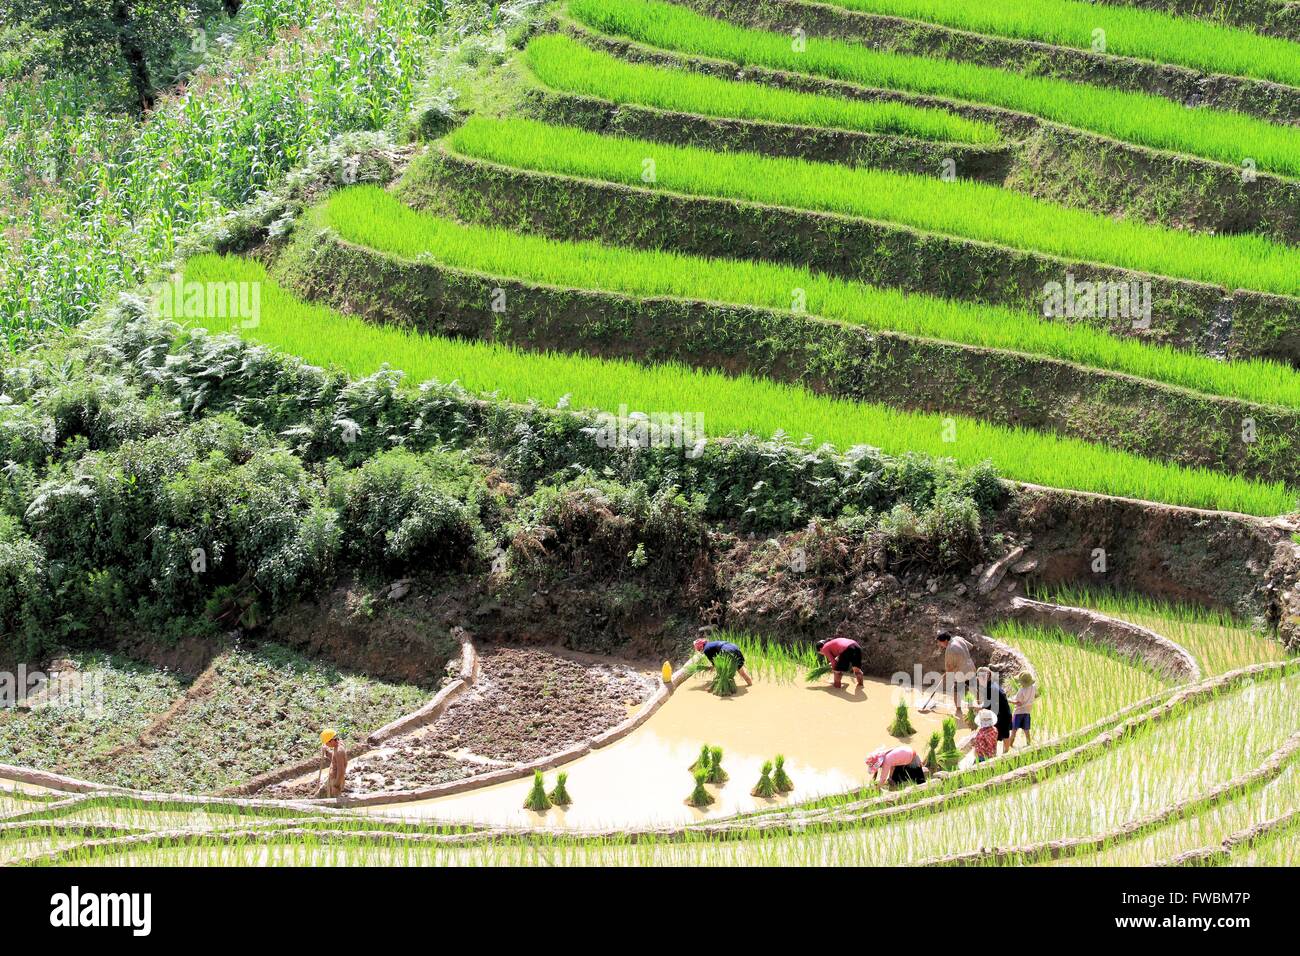 Corniciai trapiantando pianticelle di riso in terrazza irrigato i campi di riso, Sapa, Lao Cai, Vietnam Asia Foto Stock